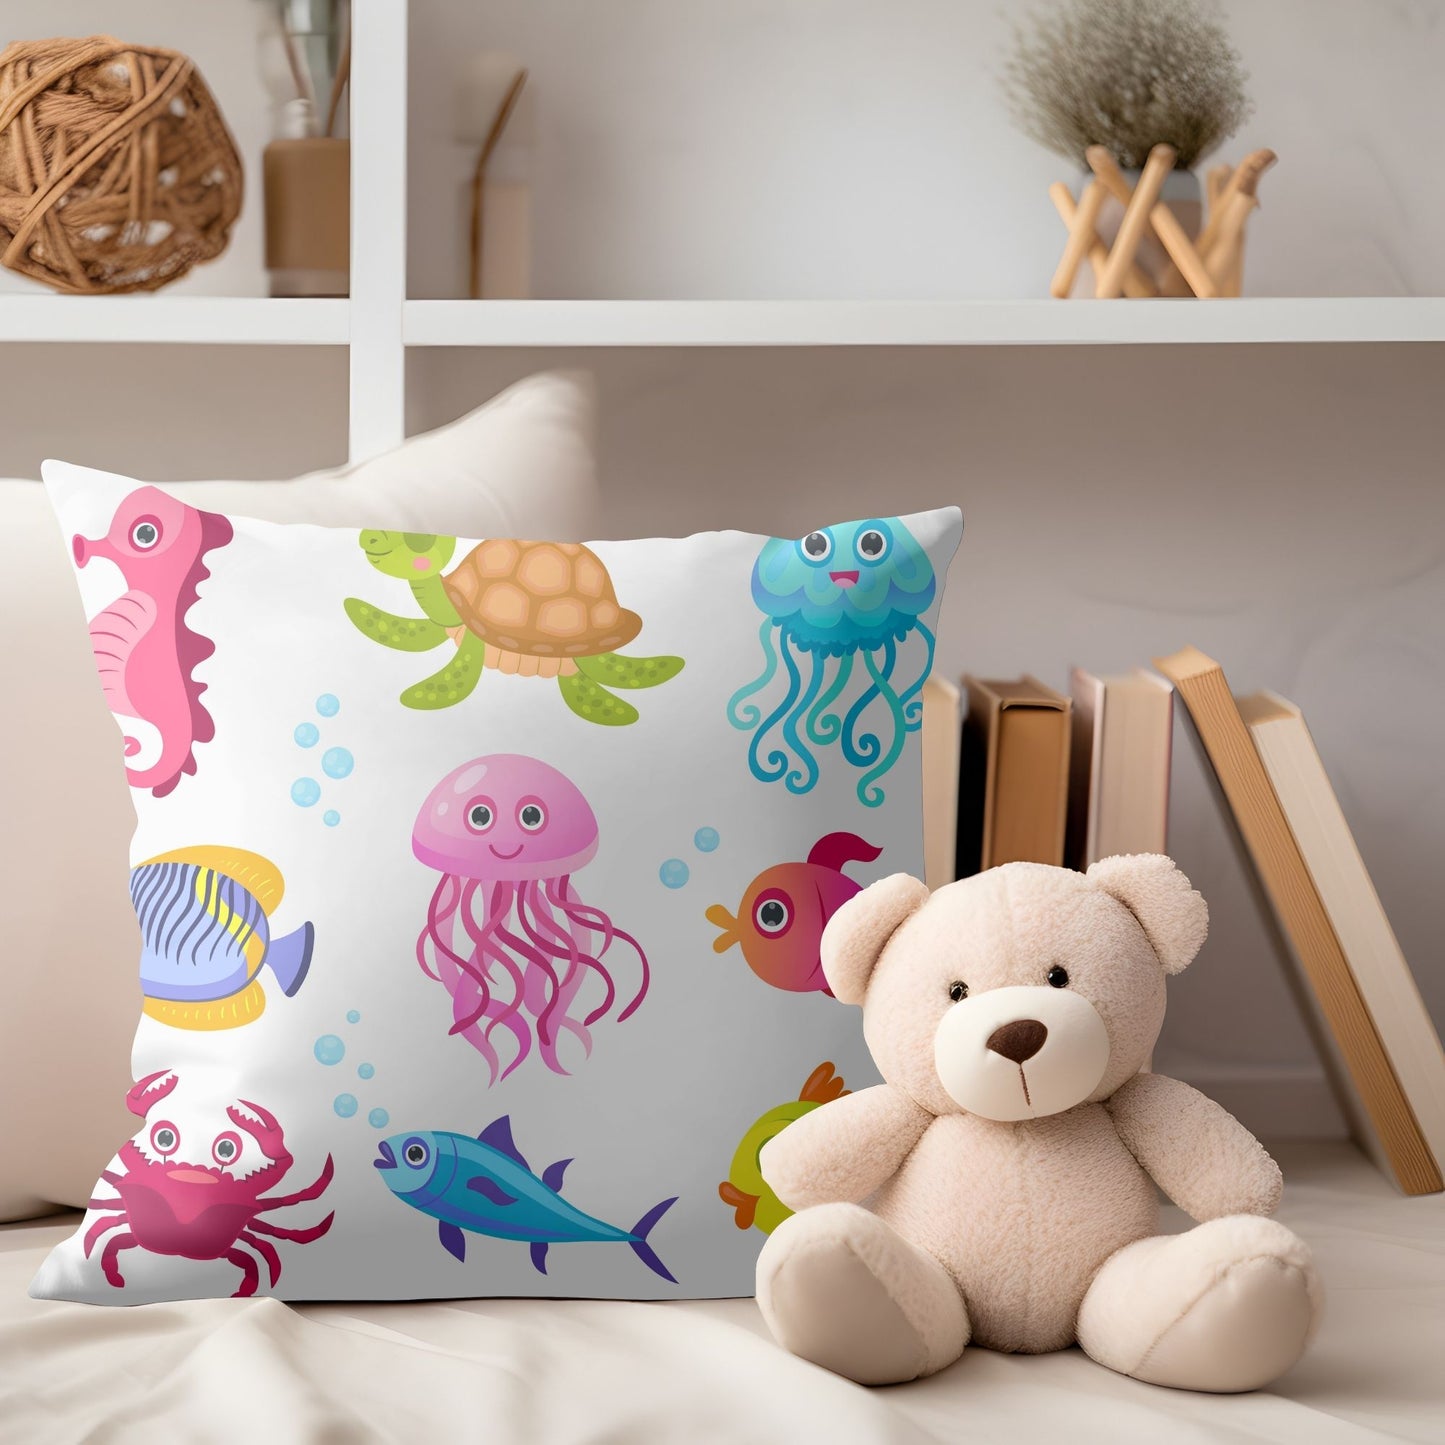 Whimsical ocean-themed kids pillow for bedtime.